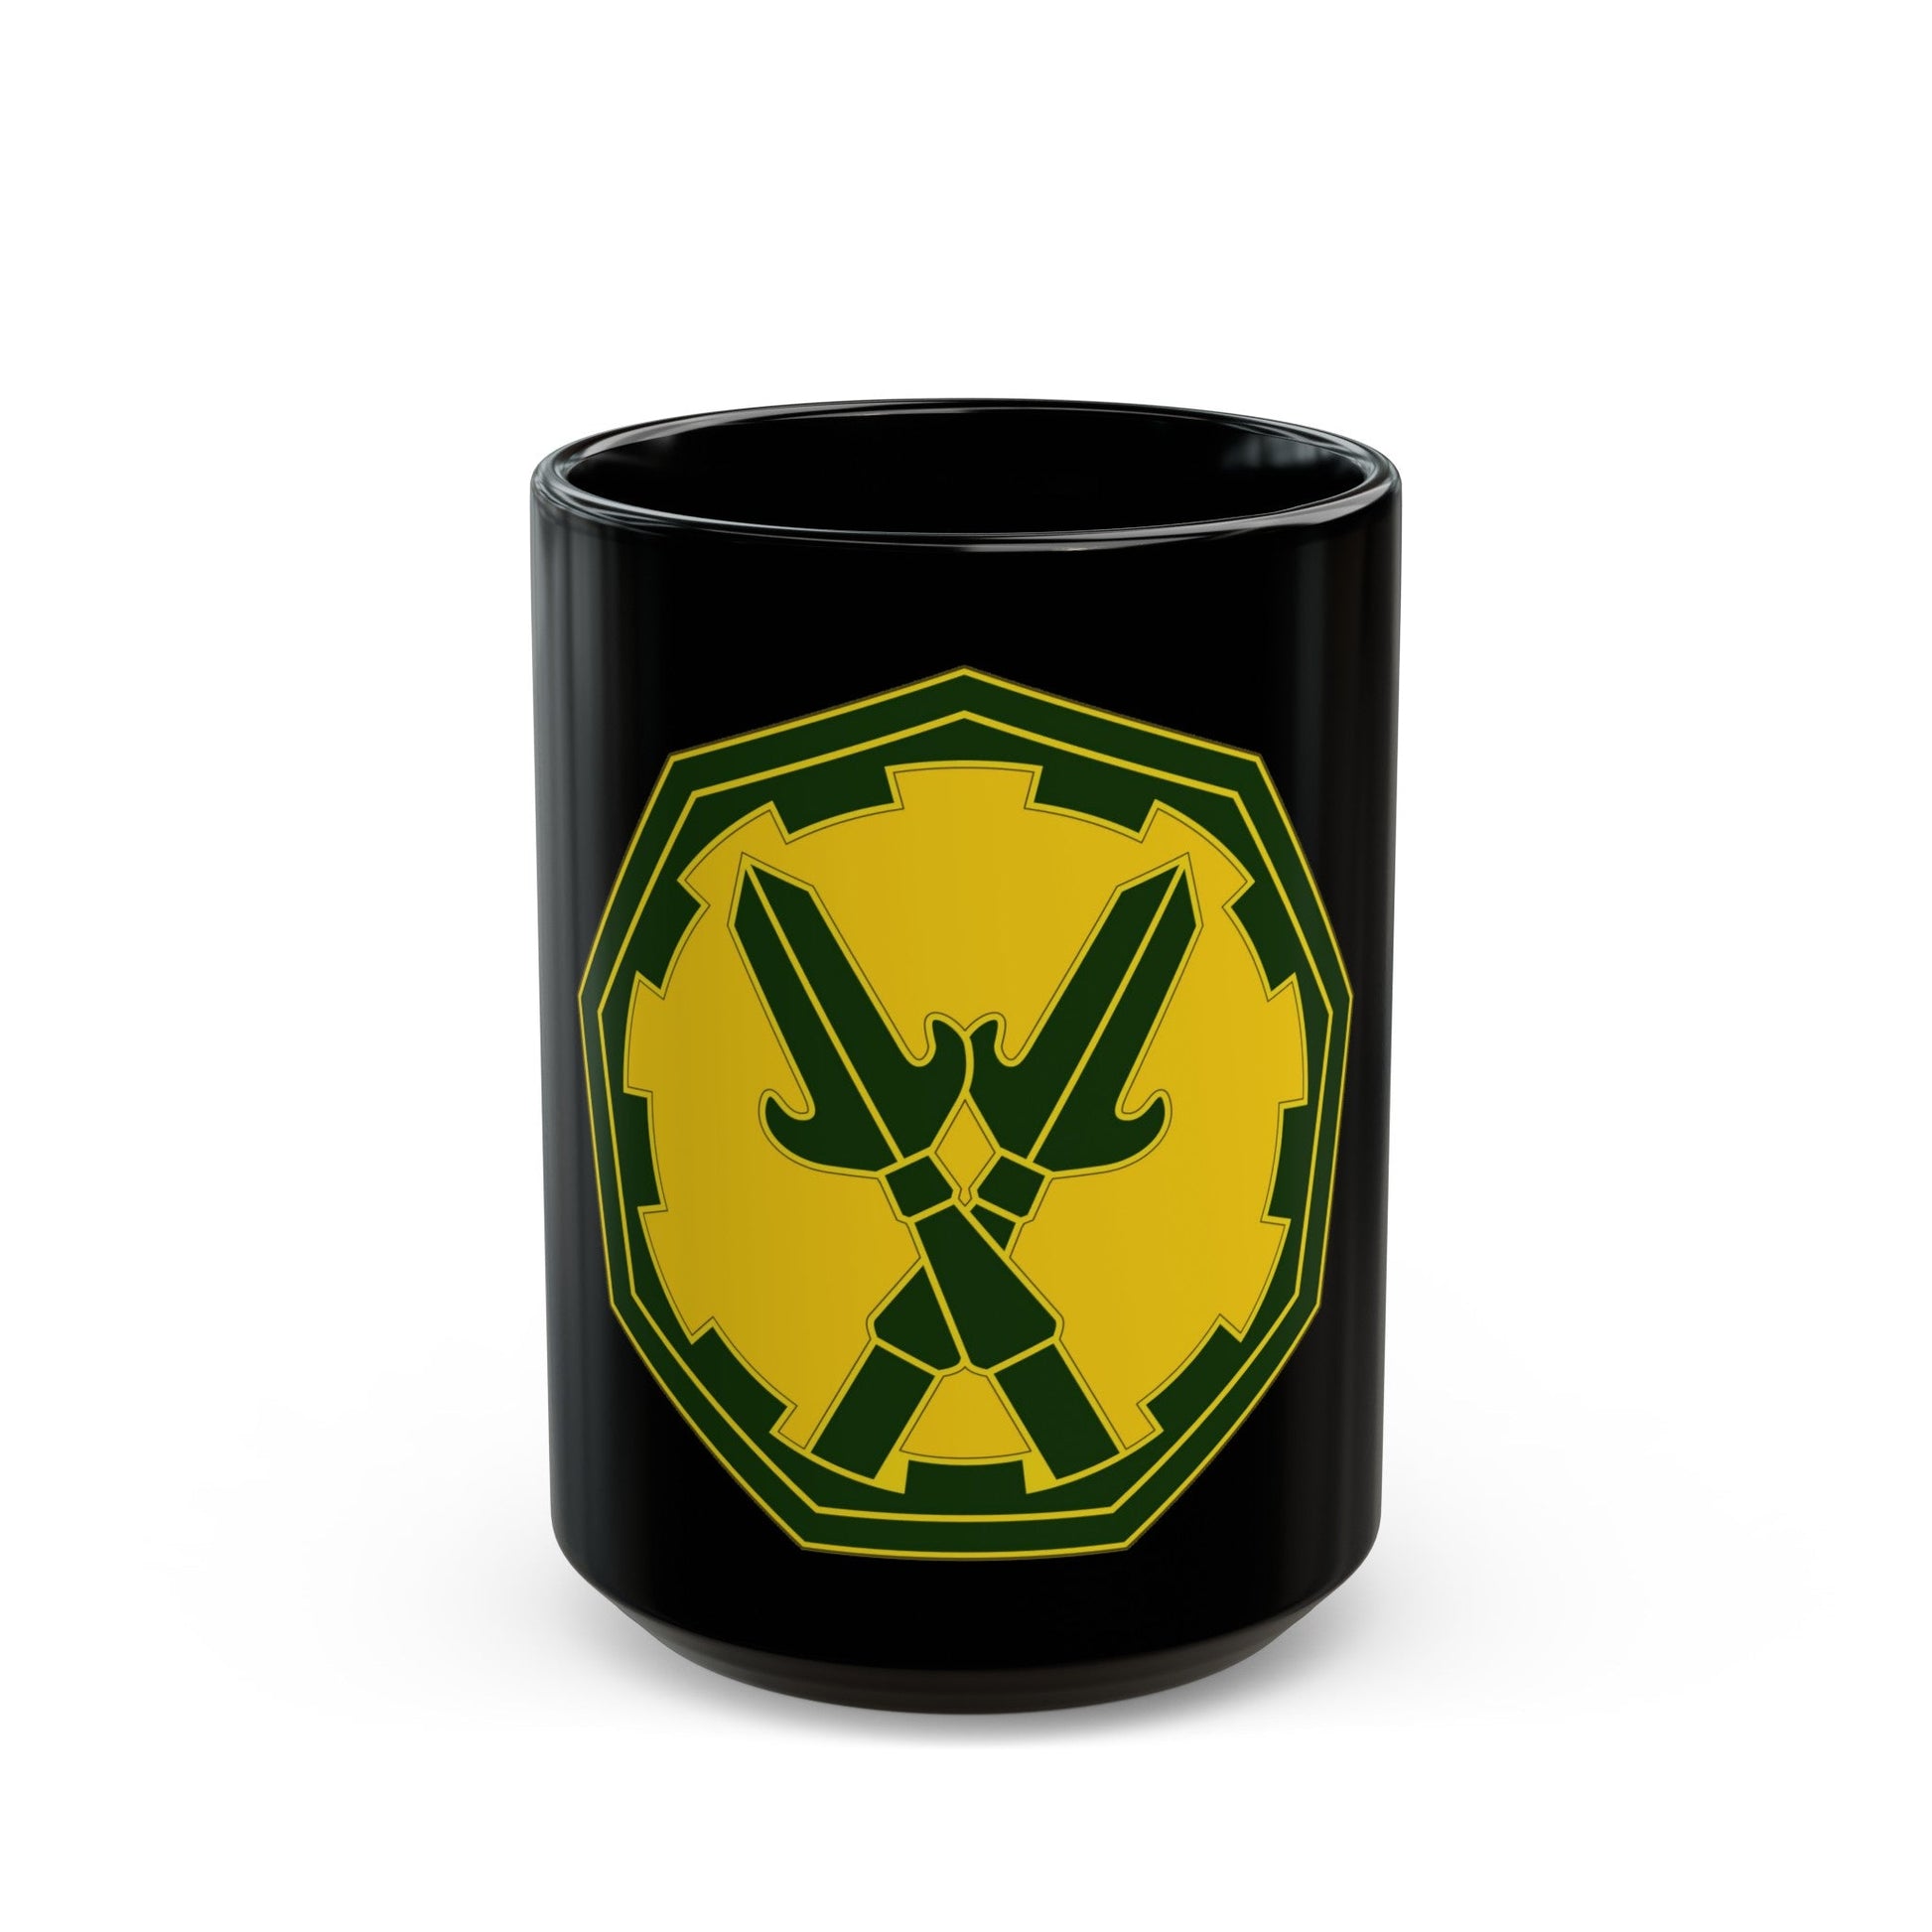 290 Military Police Brigade 3 (U.S. Army) Black Coffee Mug-15oz-The Sticker Space